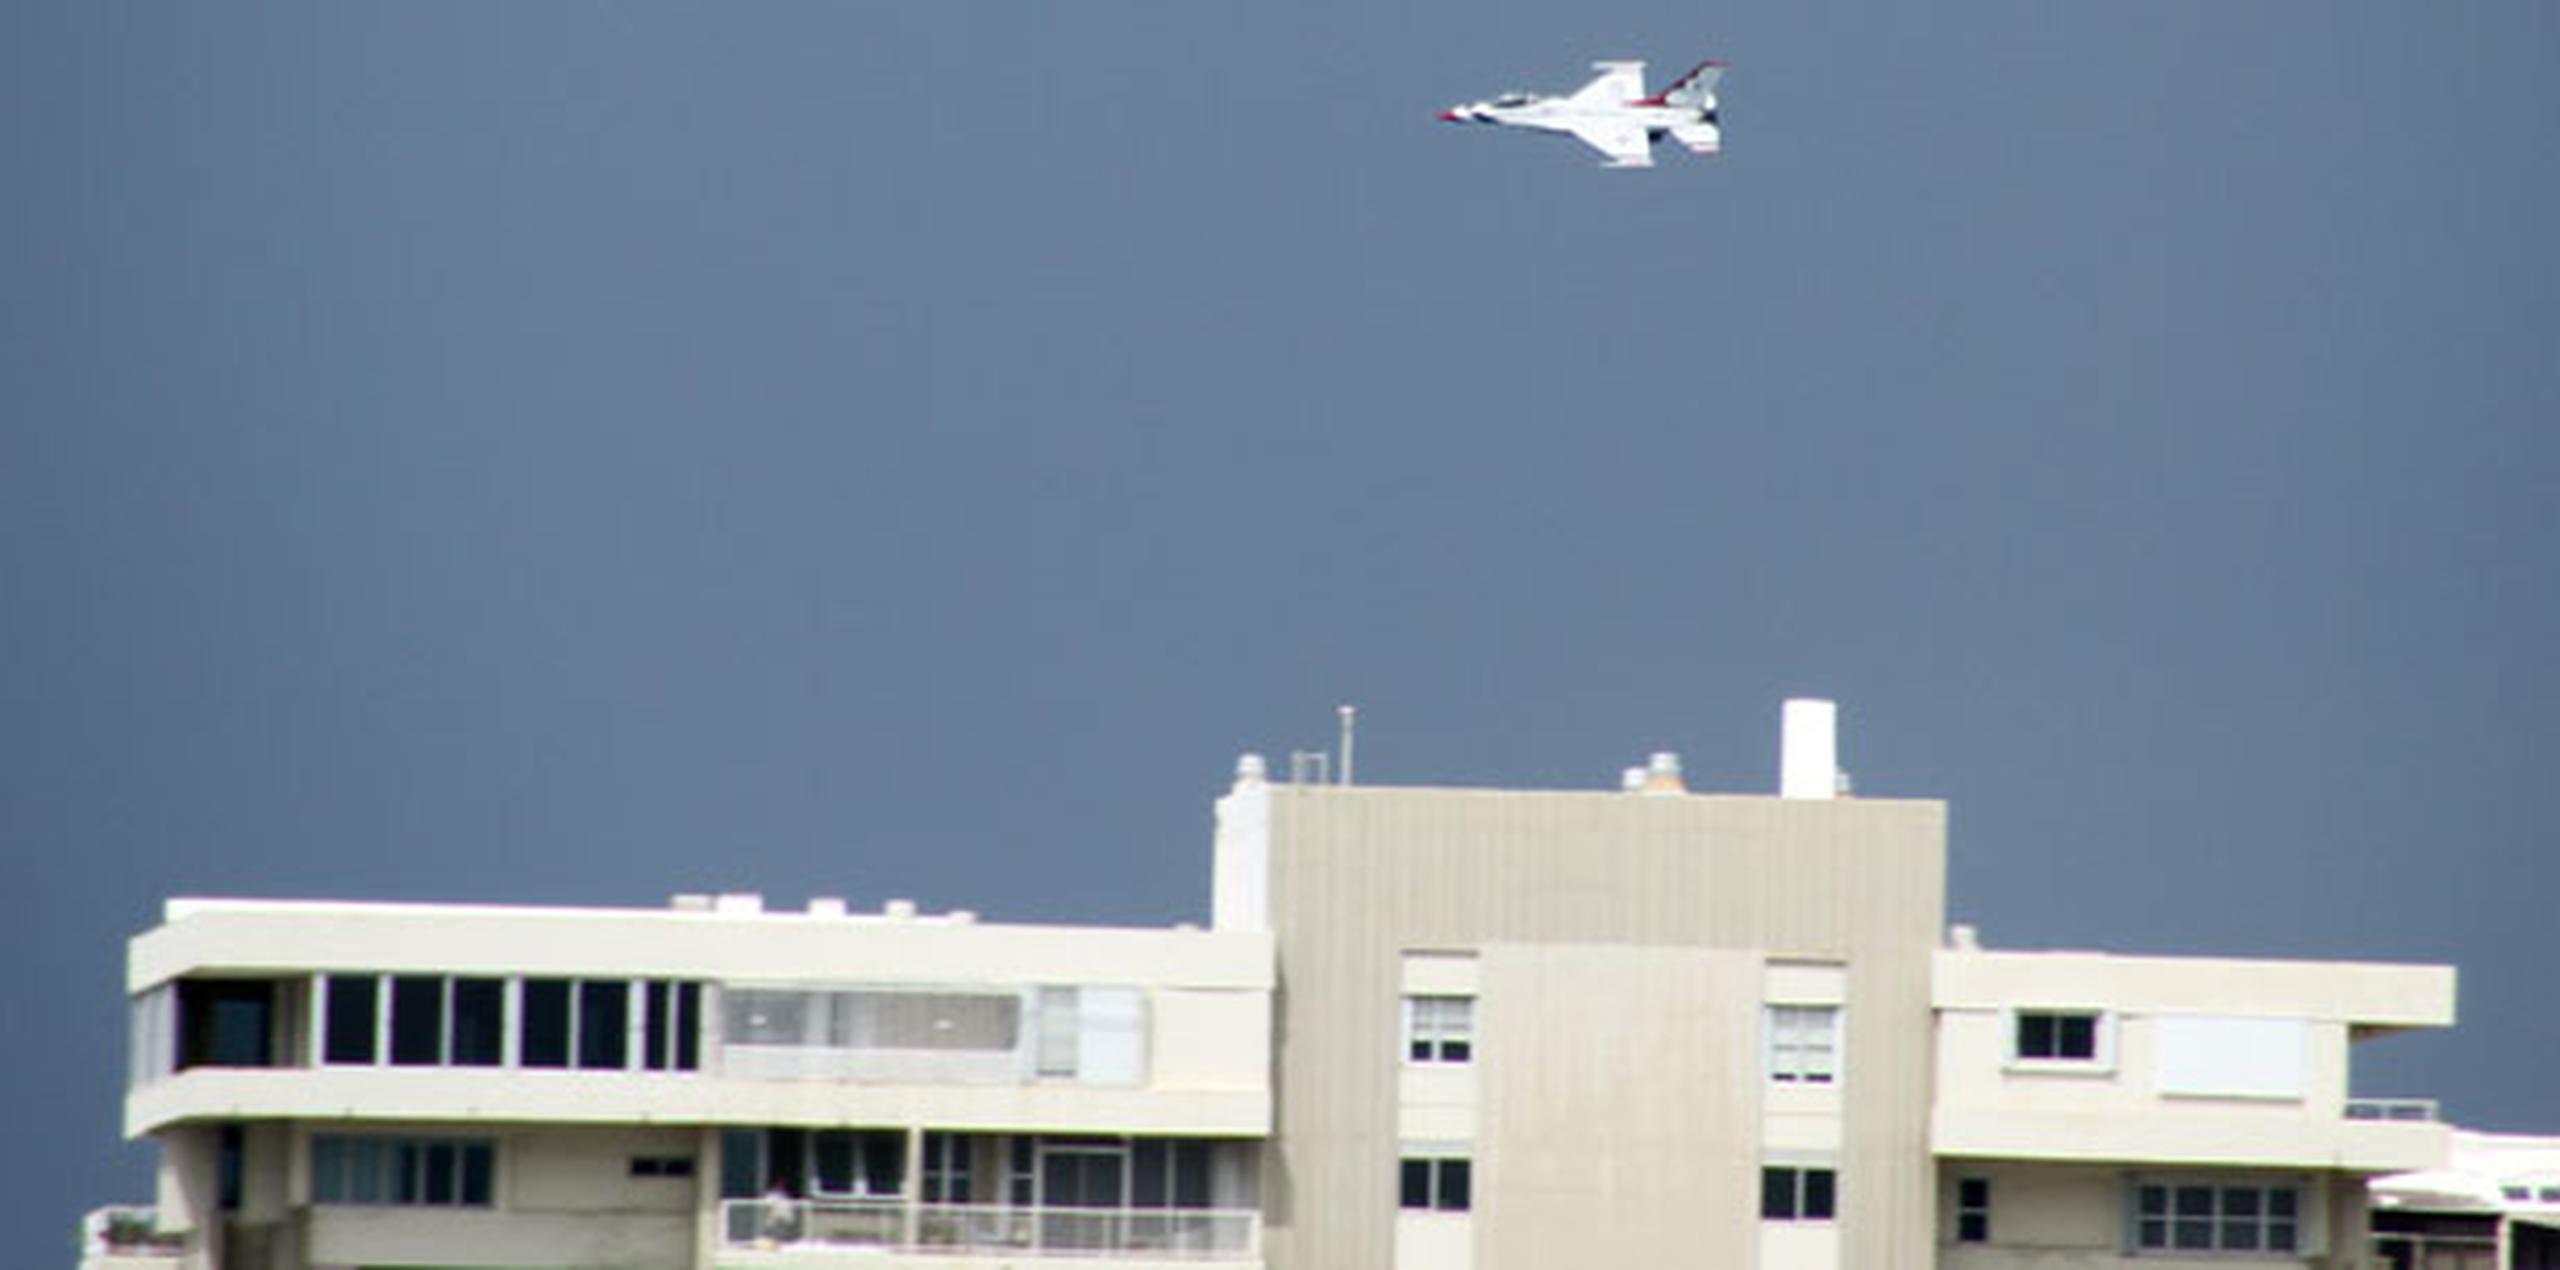 Es la segunda vez que los Thunderbirds F-16 participan de ejercicios en Puerto Rico. La ocasión anterior fue en el 2011 en Ceiba.(especial para primerahora.com/Ricardo Reyes)